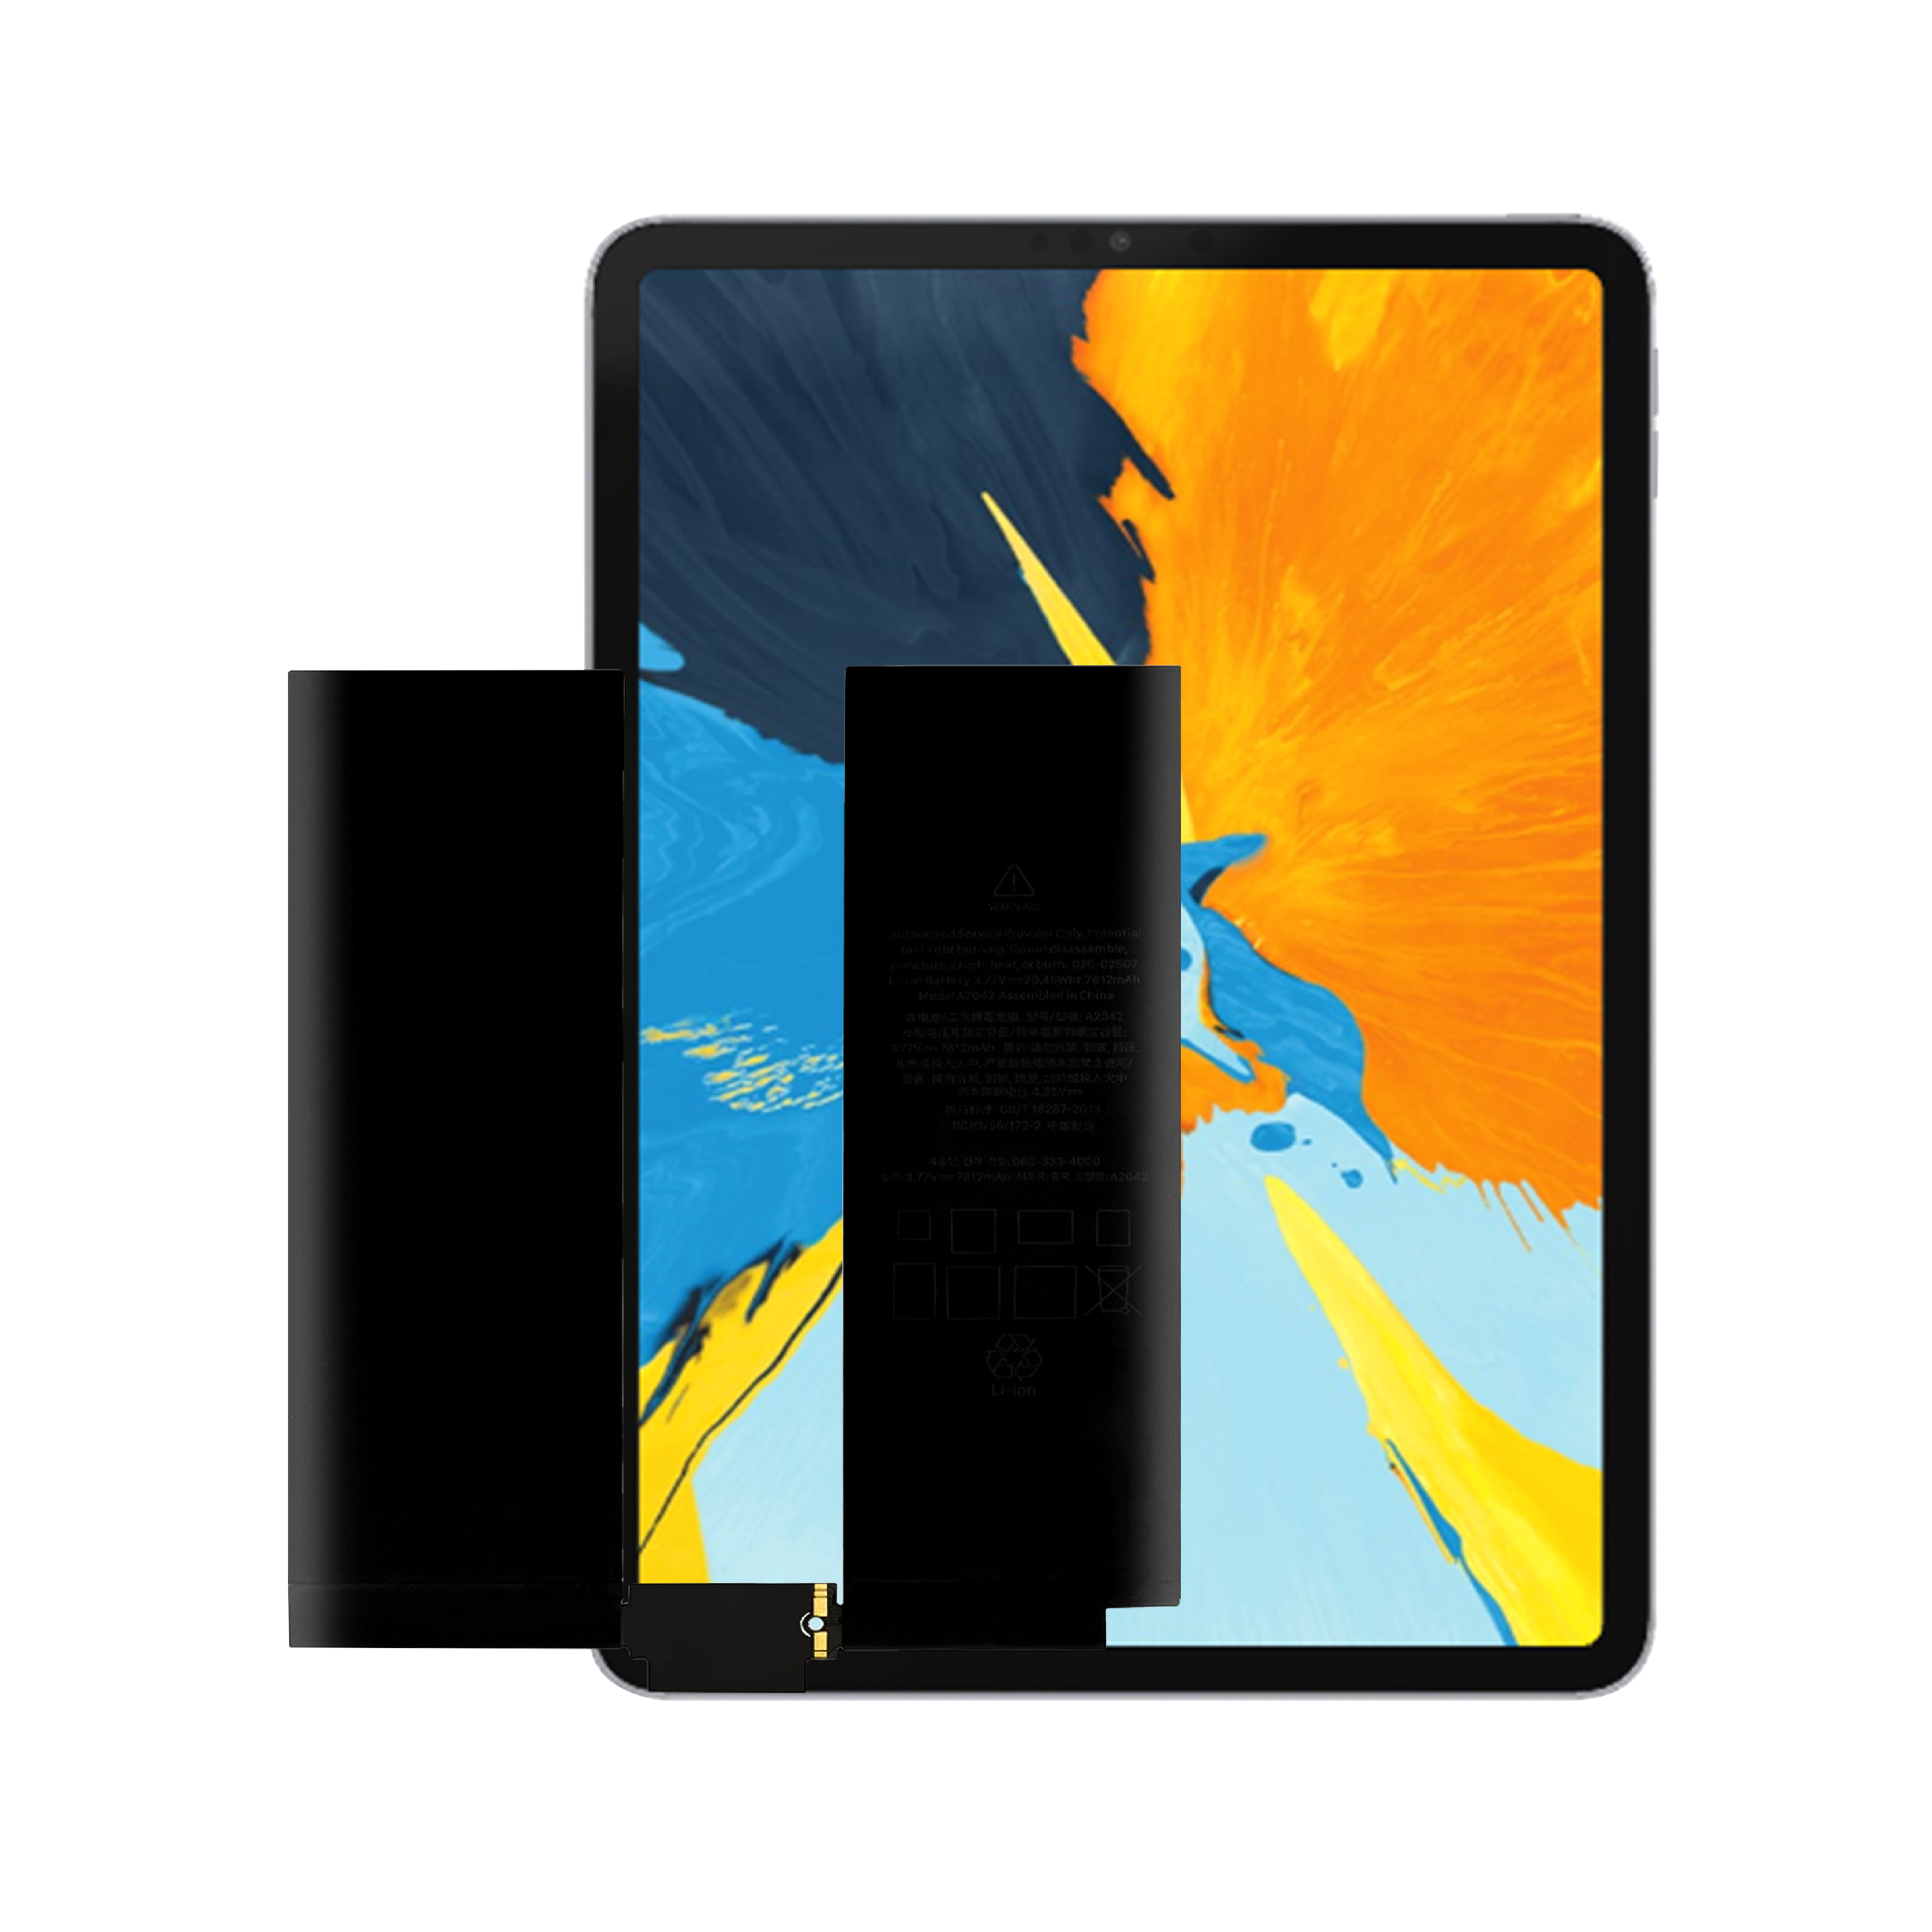 Hoë kwaliteit OEM splinternuwe 0 siklus interne tablet battery vir Apple iPad Pro 11 1ste generasie battery